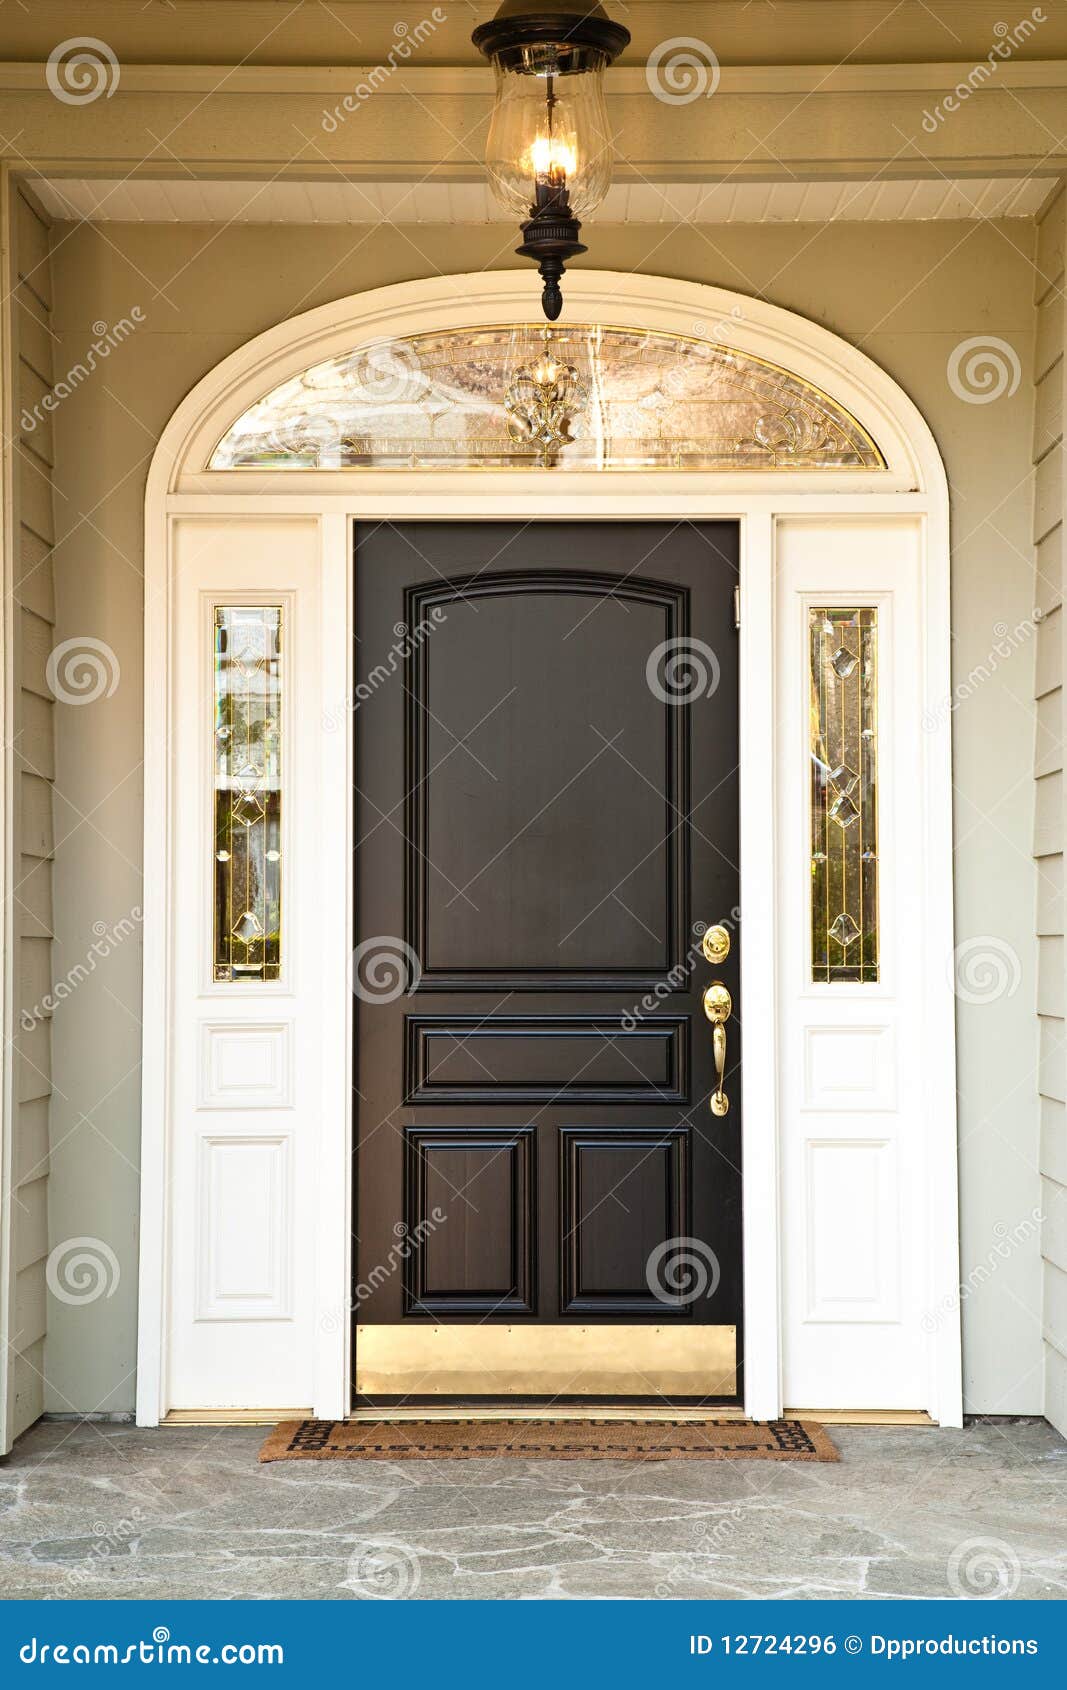 front door of upscale home